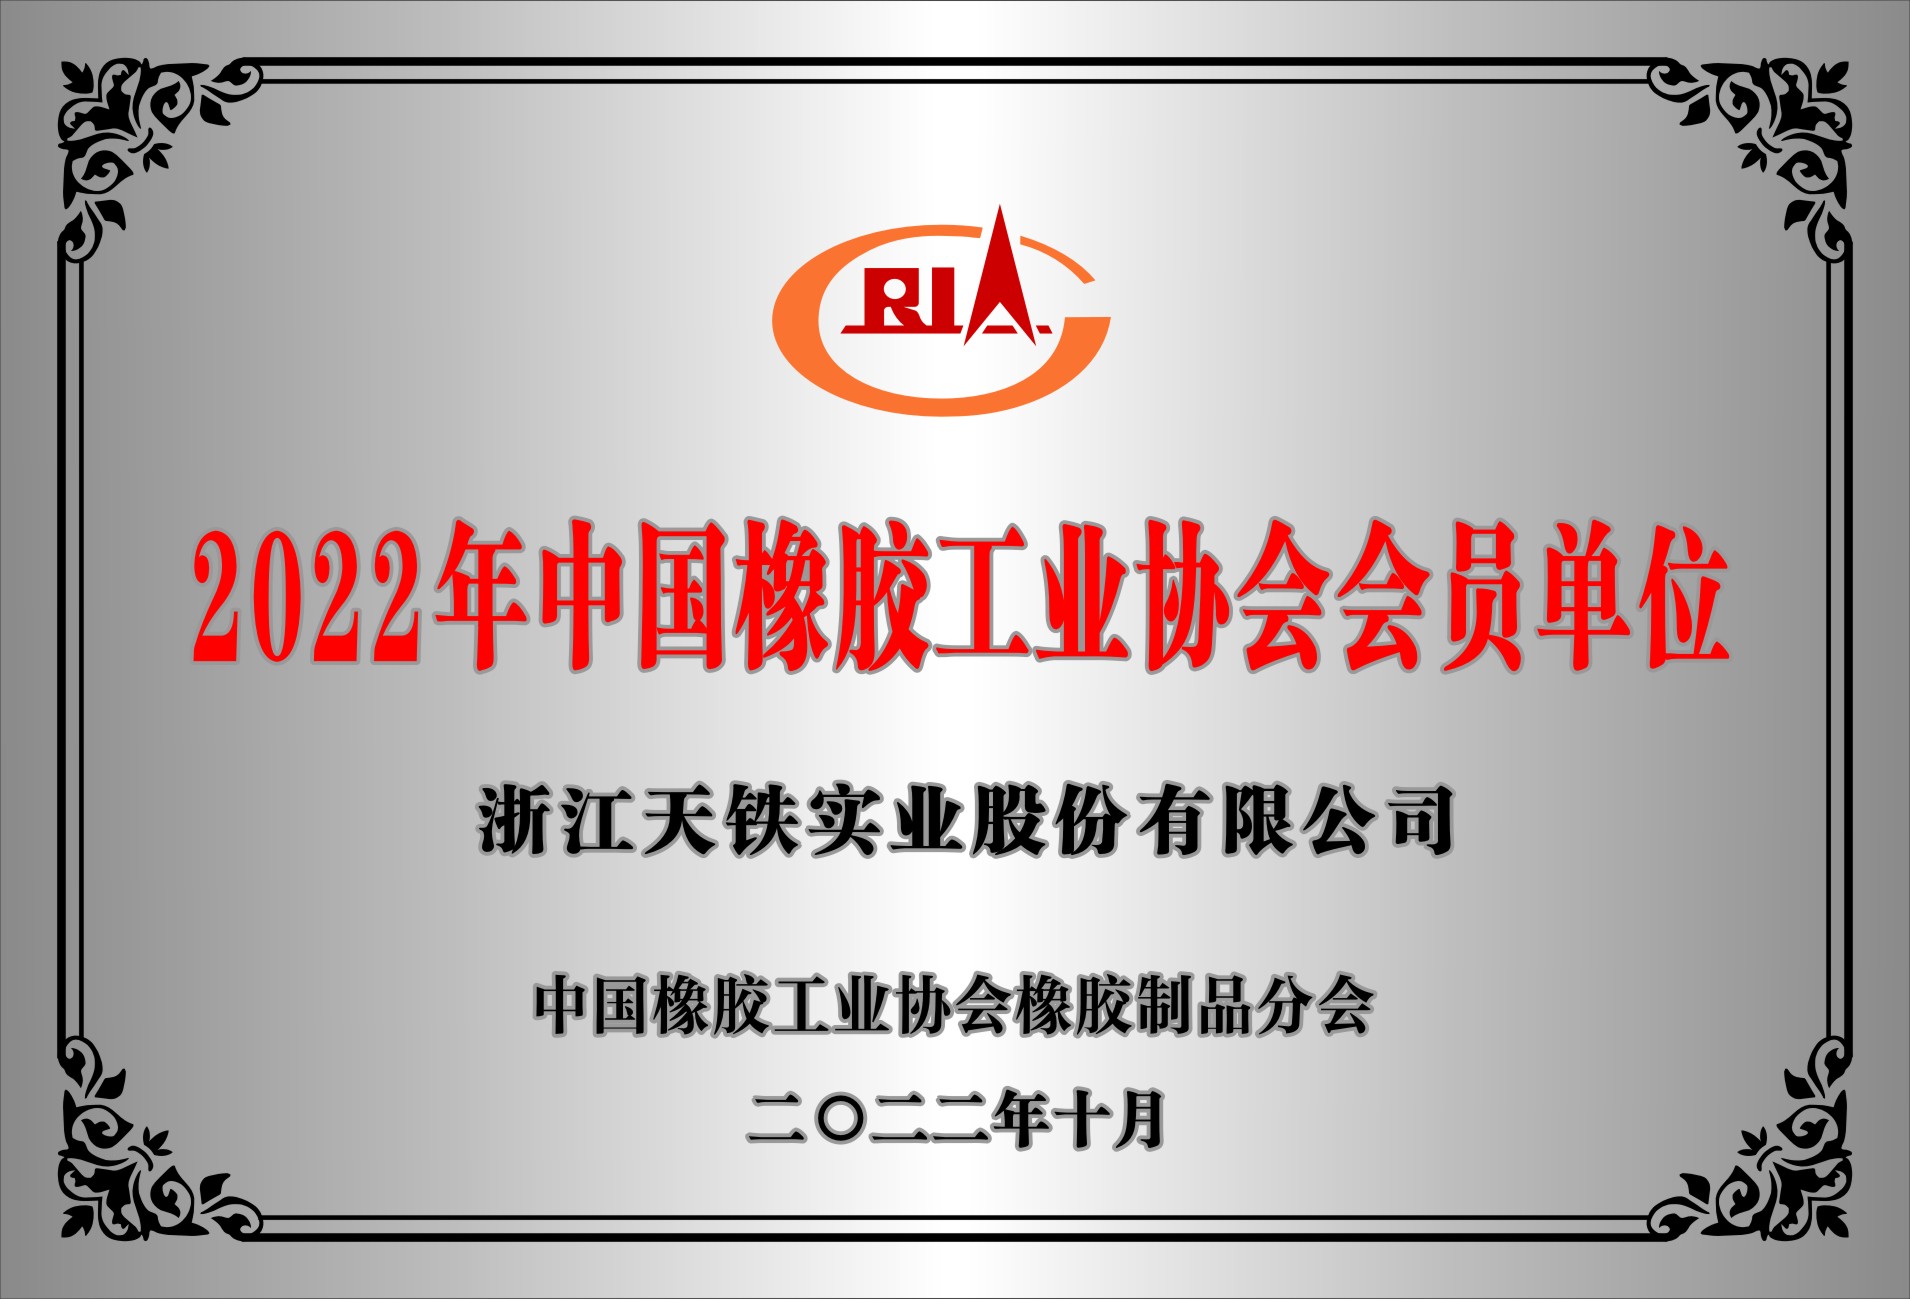 會員證書 中國橡膠工業協會 2022